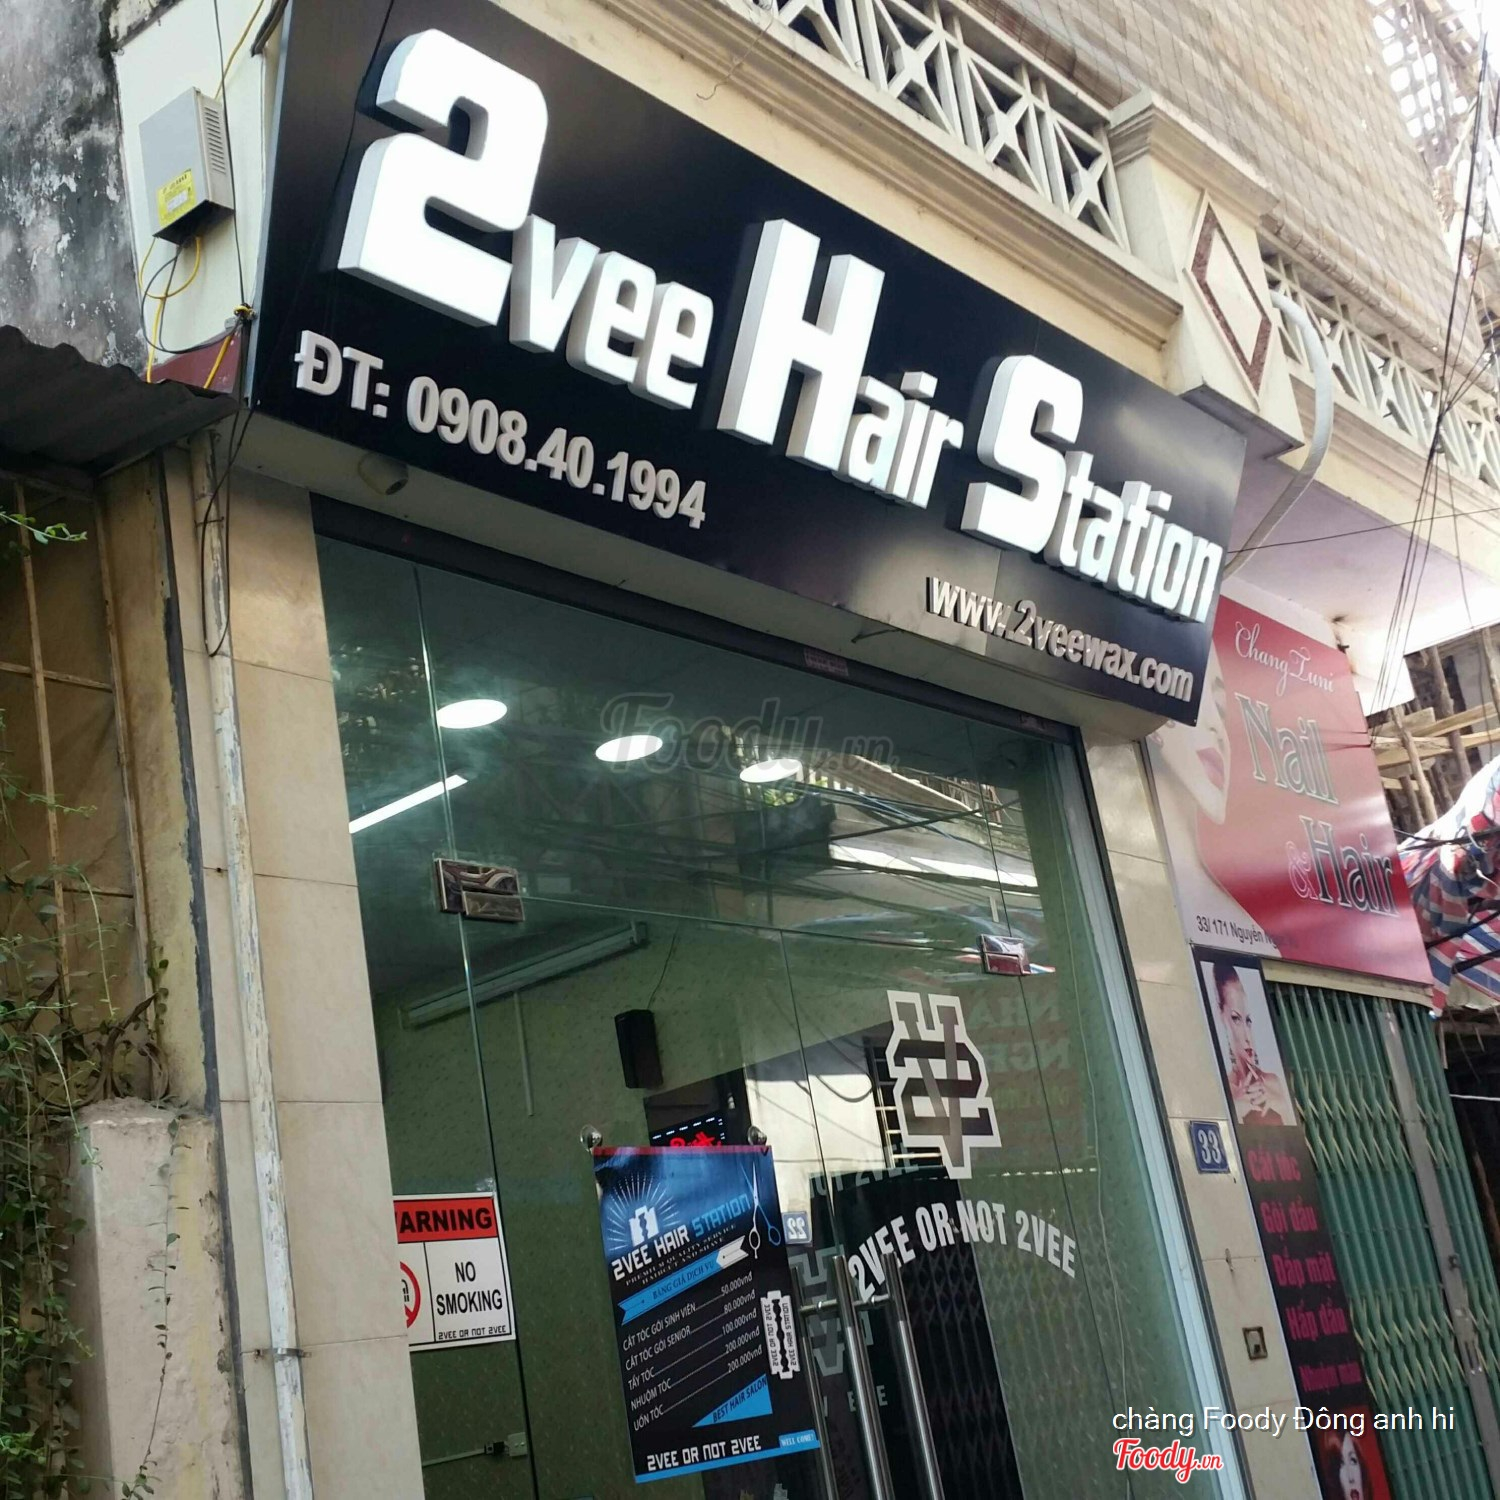 2vee Hair Station  Tóc Nam Đẹp ở Quận Cầu Giấy Hà Nội  Album tổng hợp  2vee  Hair Station  Tóc Nam Đẹp  Foodyvn